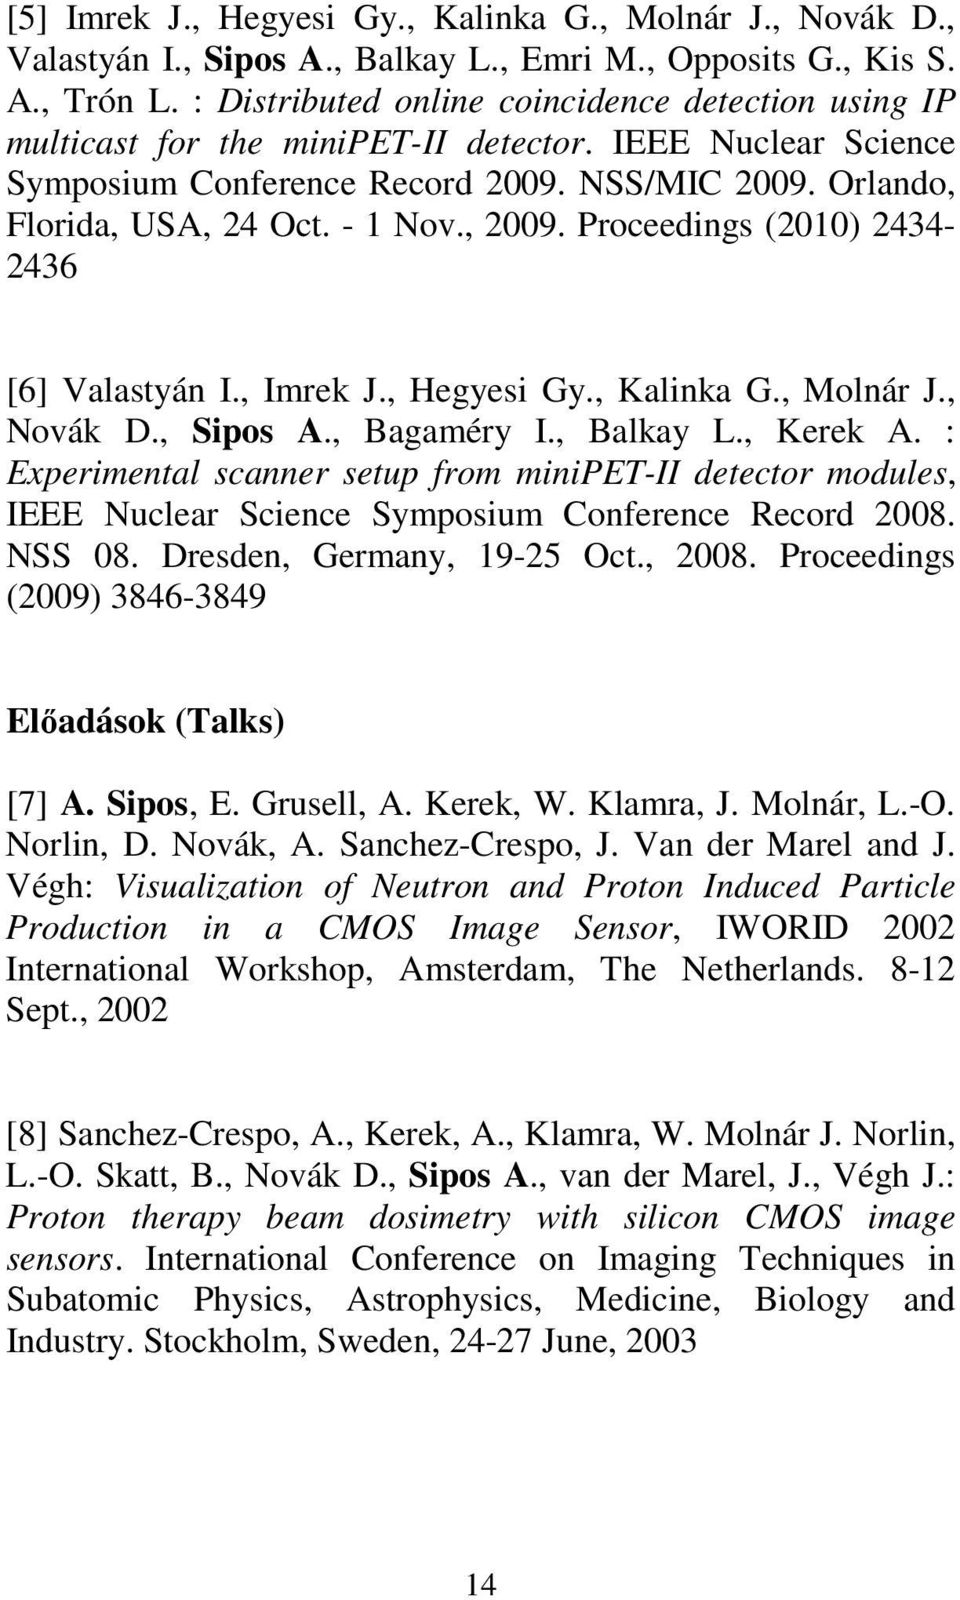 , 2009. Proceedings (2010) 2434-2436 [6] Valastyán I., Imrek J., Hegyesi Gy., Kalinka G., Molnár J., Novák D., Sipos A., Bagaméry I., Balkay L., Kerek A.